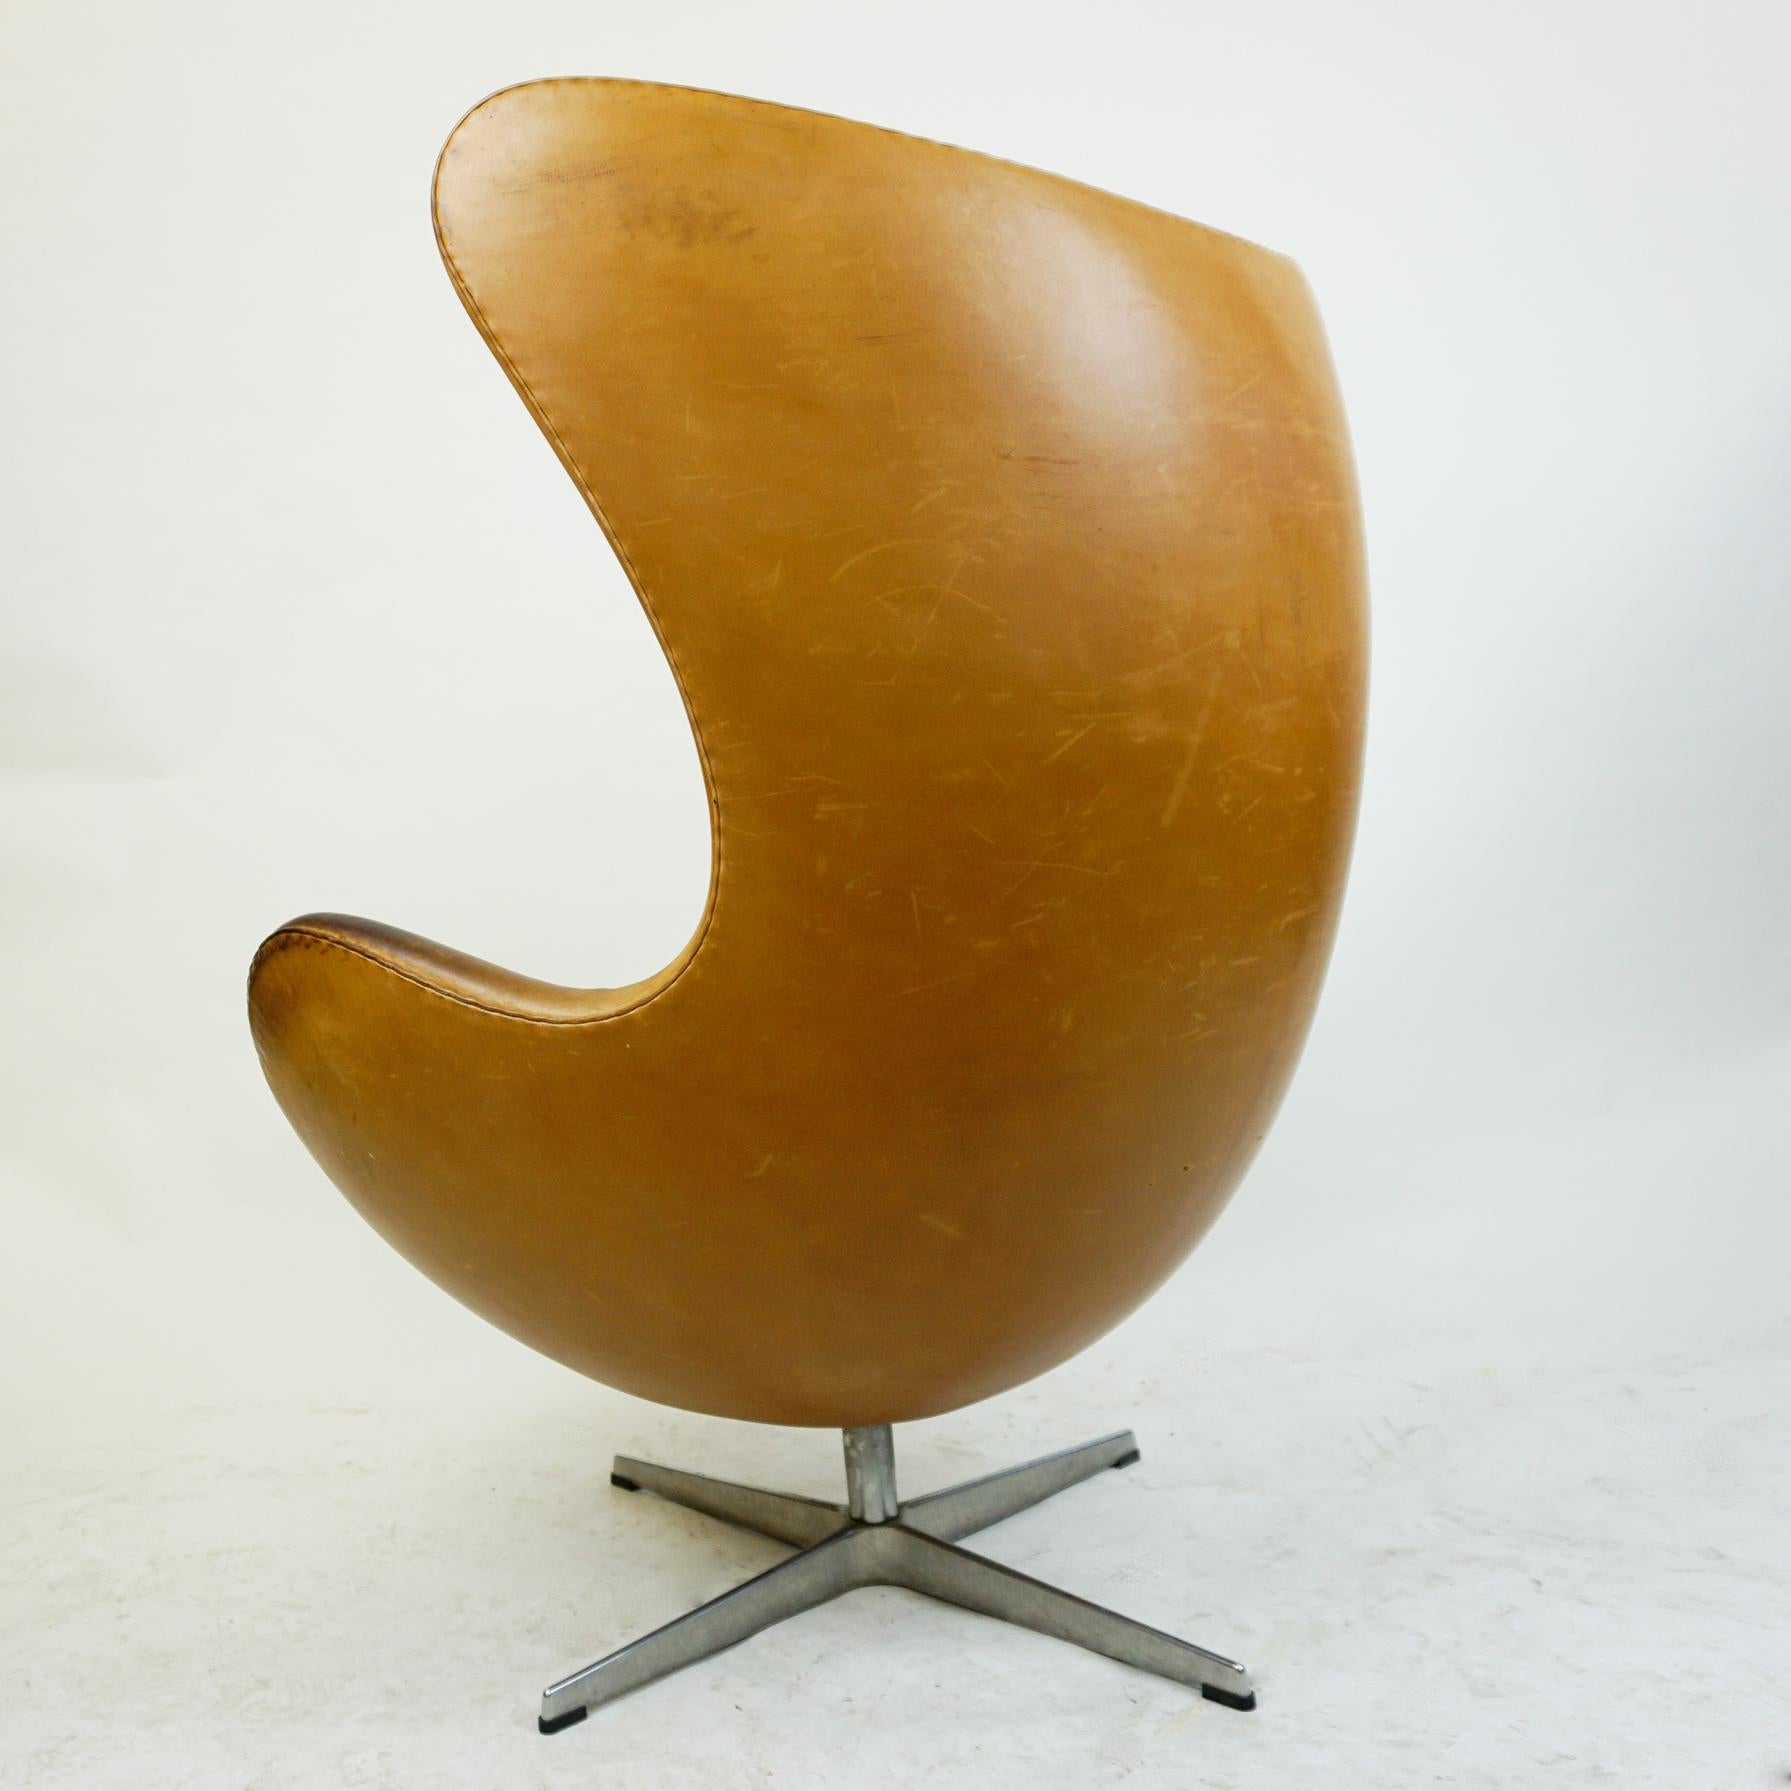 Danish Cognac Leather Egg Chair, Mod. 3317 by Arne Jacobsen for Fritz Hansen